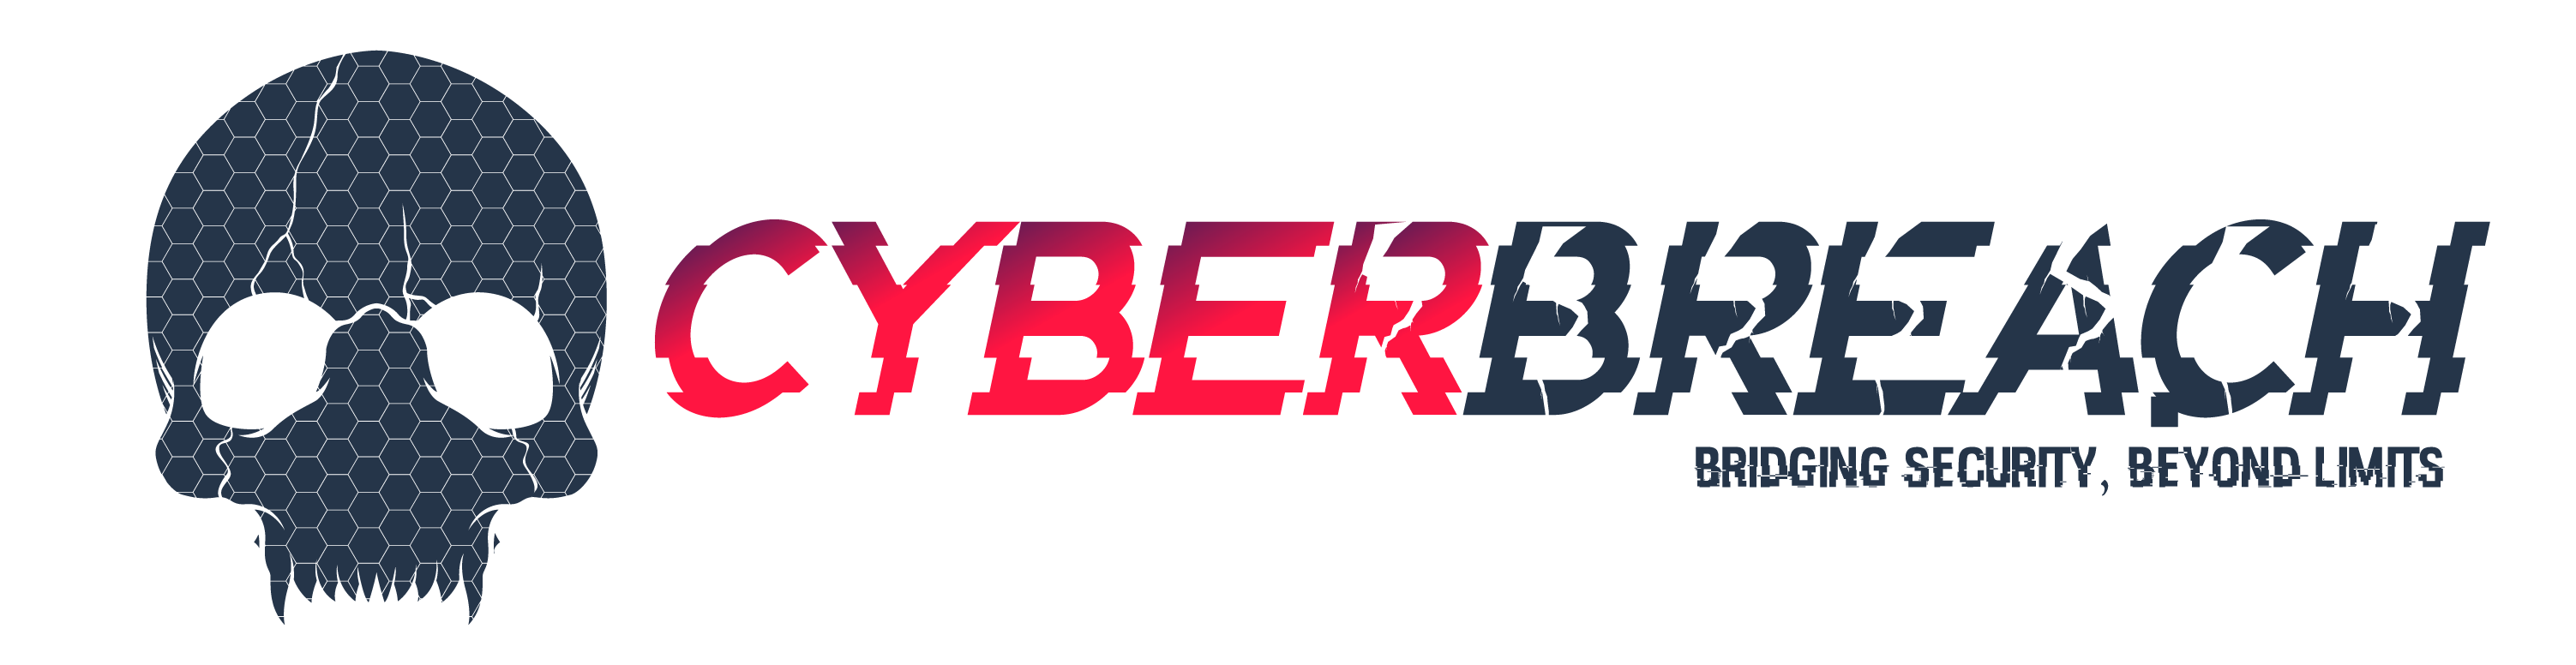 CyberBreach